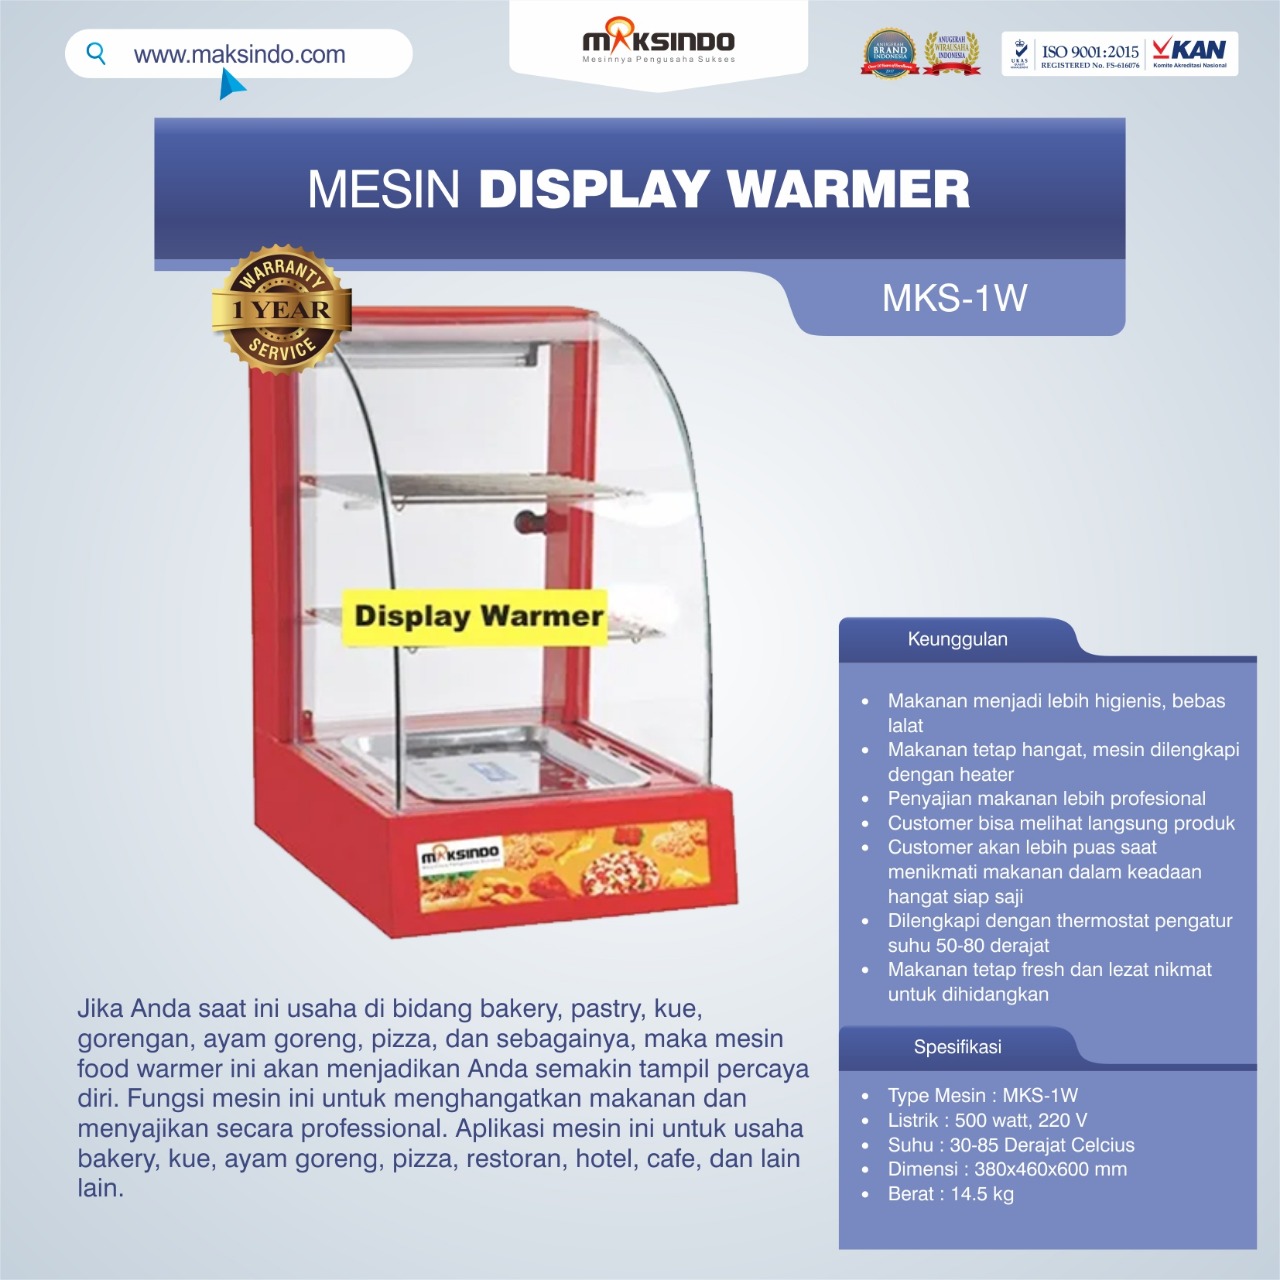 Jual Mesin Display Warmer (MKS-1W) di Banjarmasin